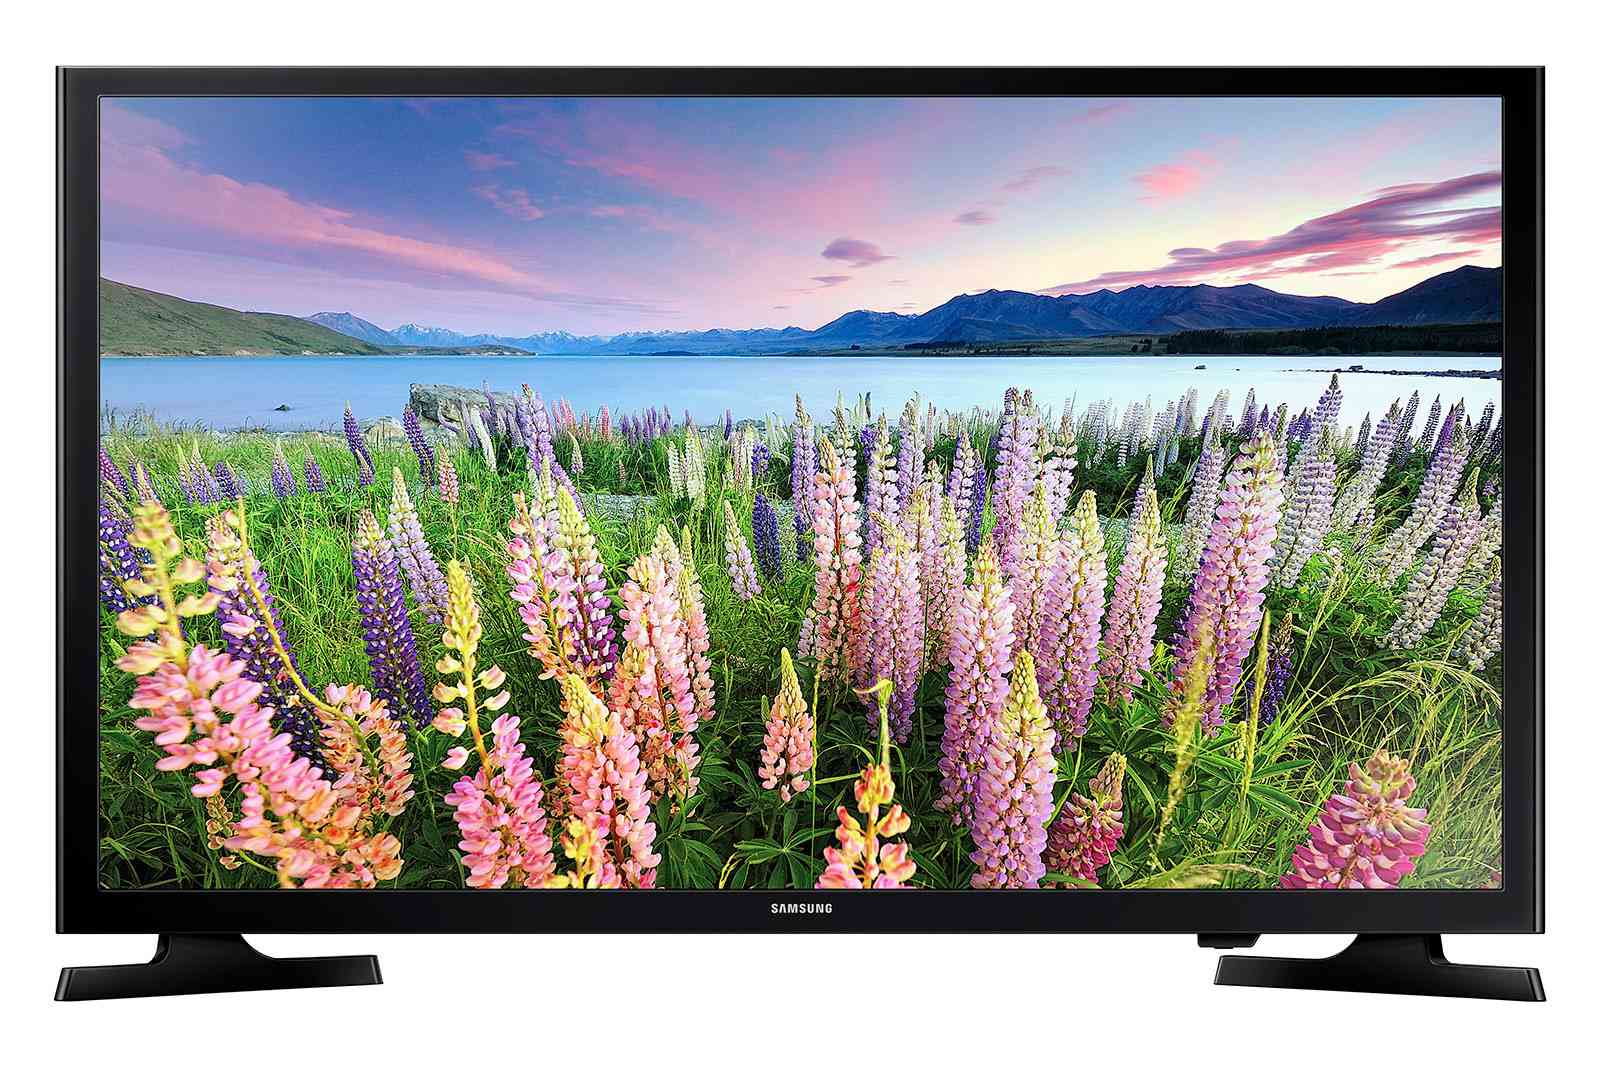 Samsung N5200 1080p FHD TV